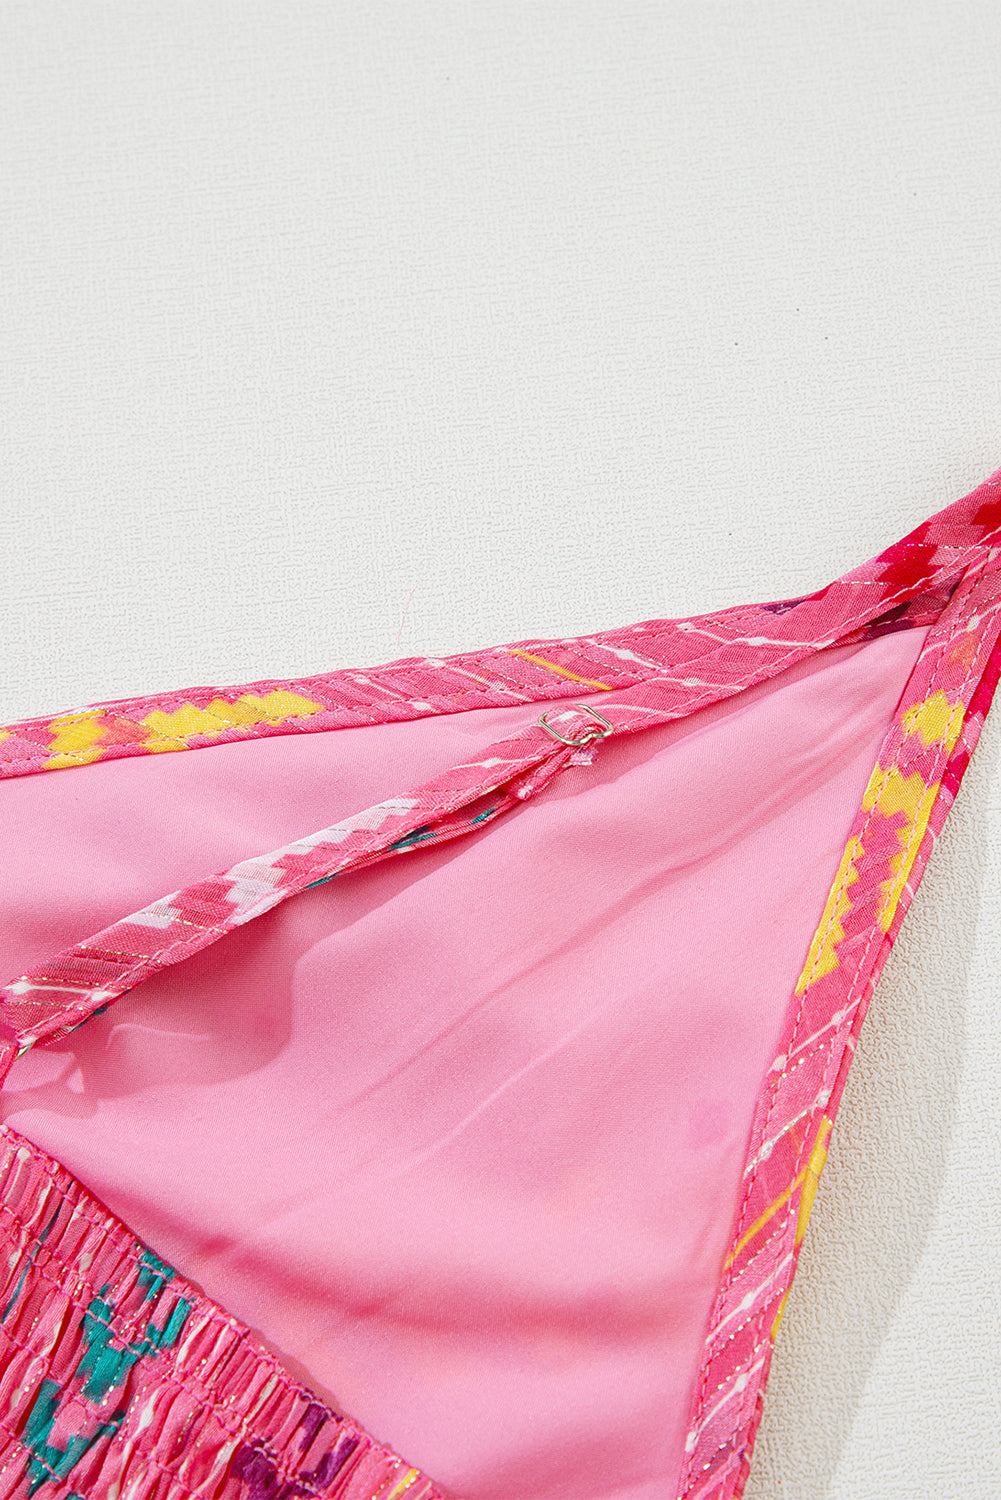 Rožnata dolga obleka z zavihkom v zahodu, s potiskanimi resicami in zavihkom z v-izrezom